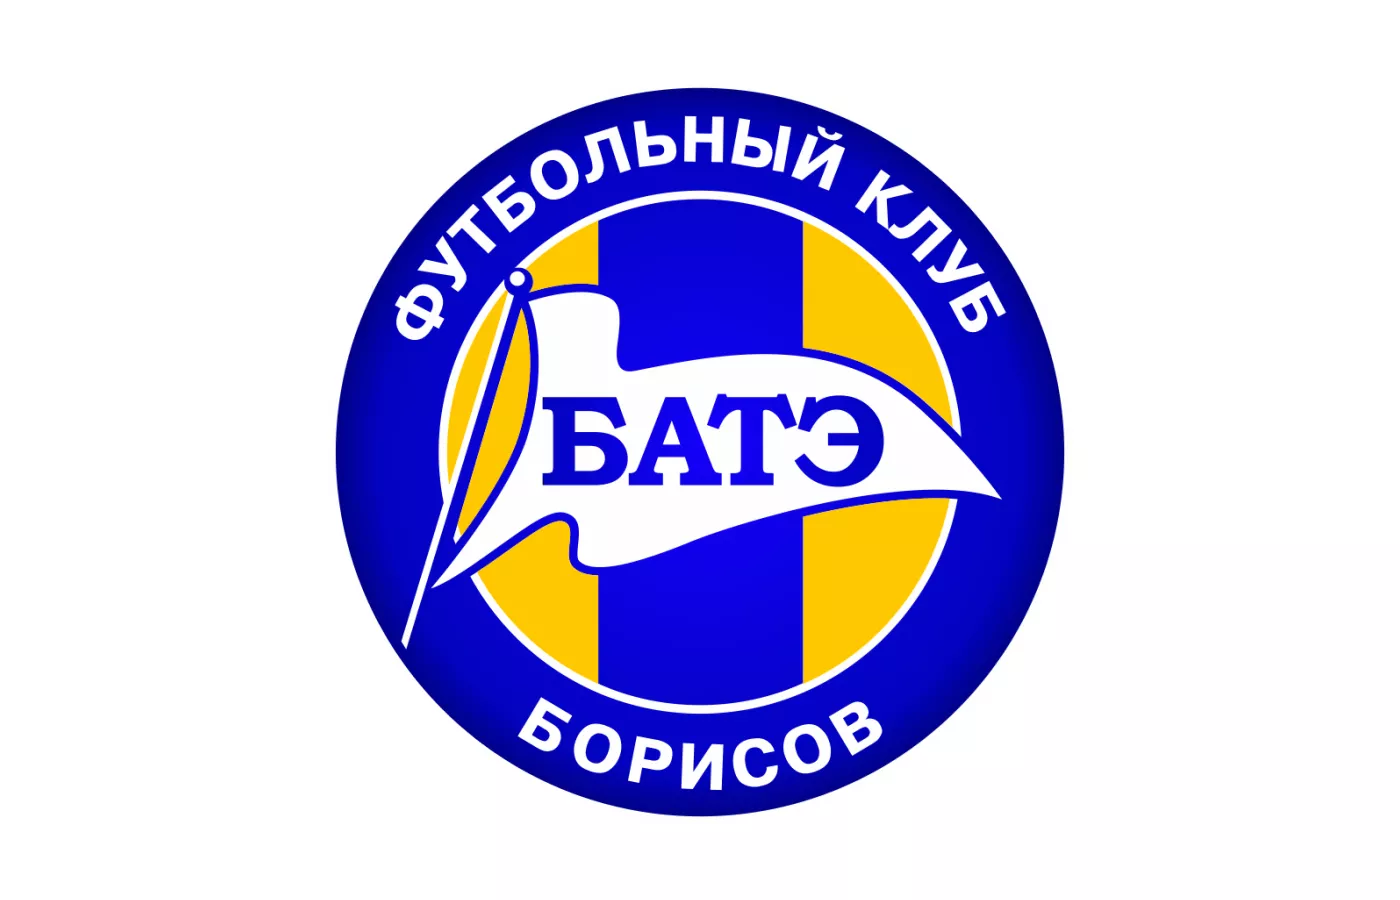 Футбольный клуб БАТЭ